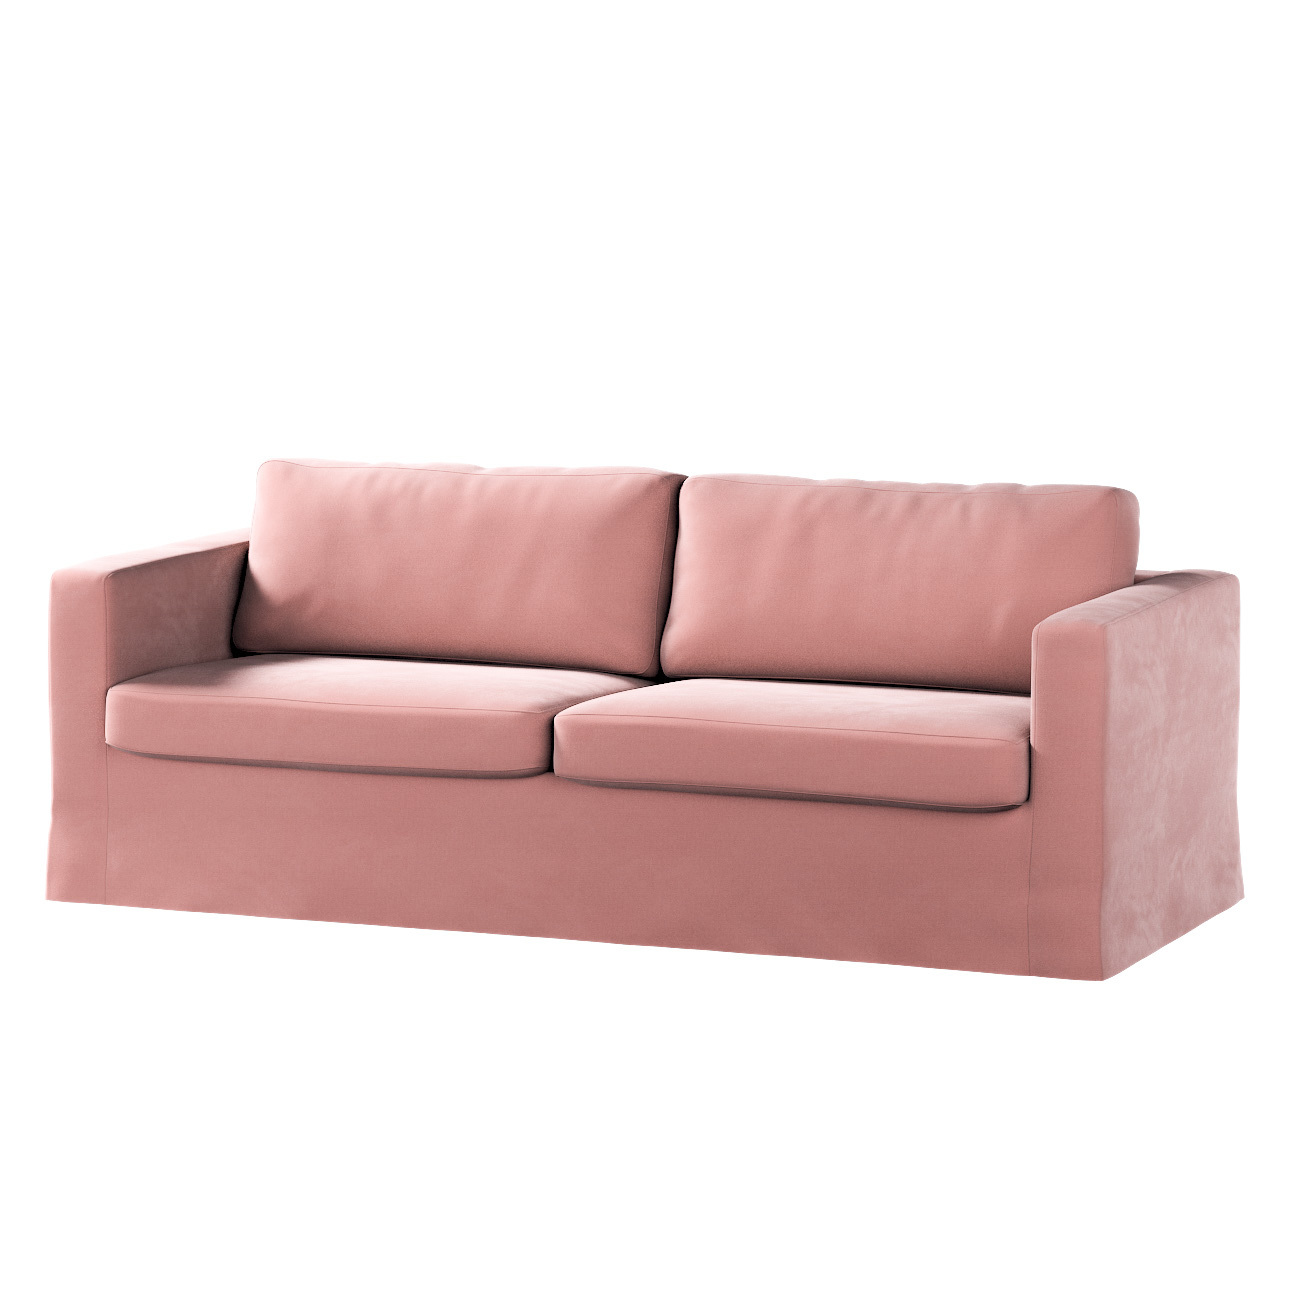 Bezug für Karlstad 3-Sitzer Sofa nicht ausklappbar, lang, koralle, Bezug fü günstig online kaufen